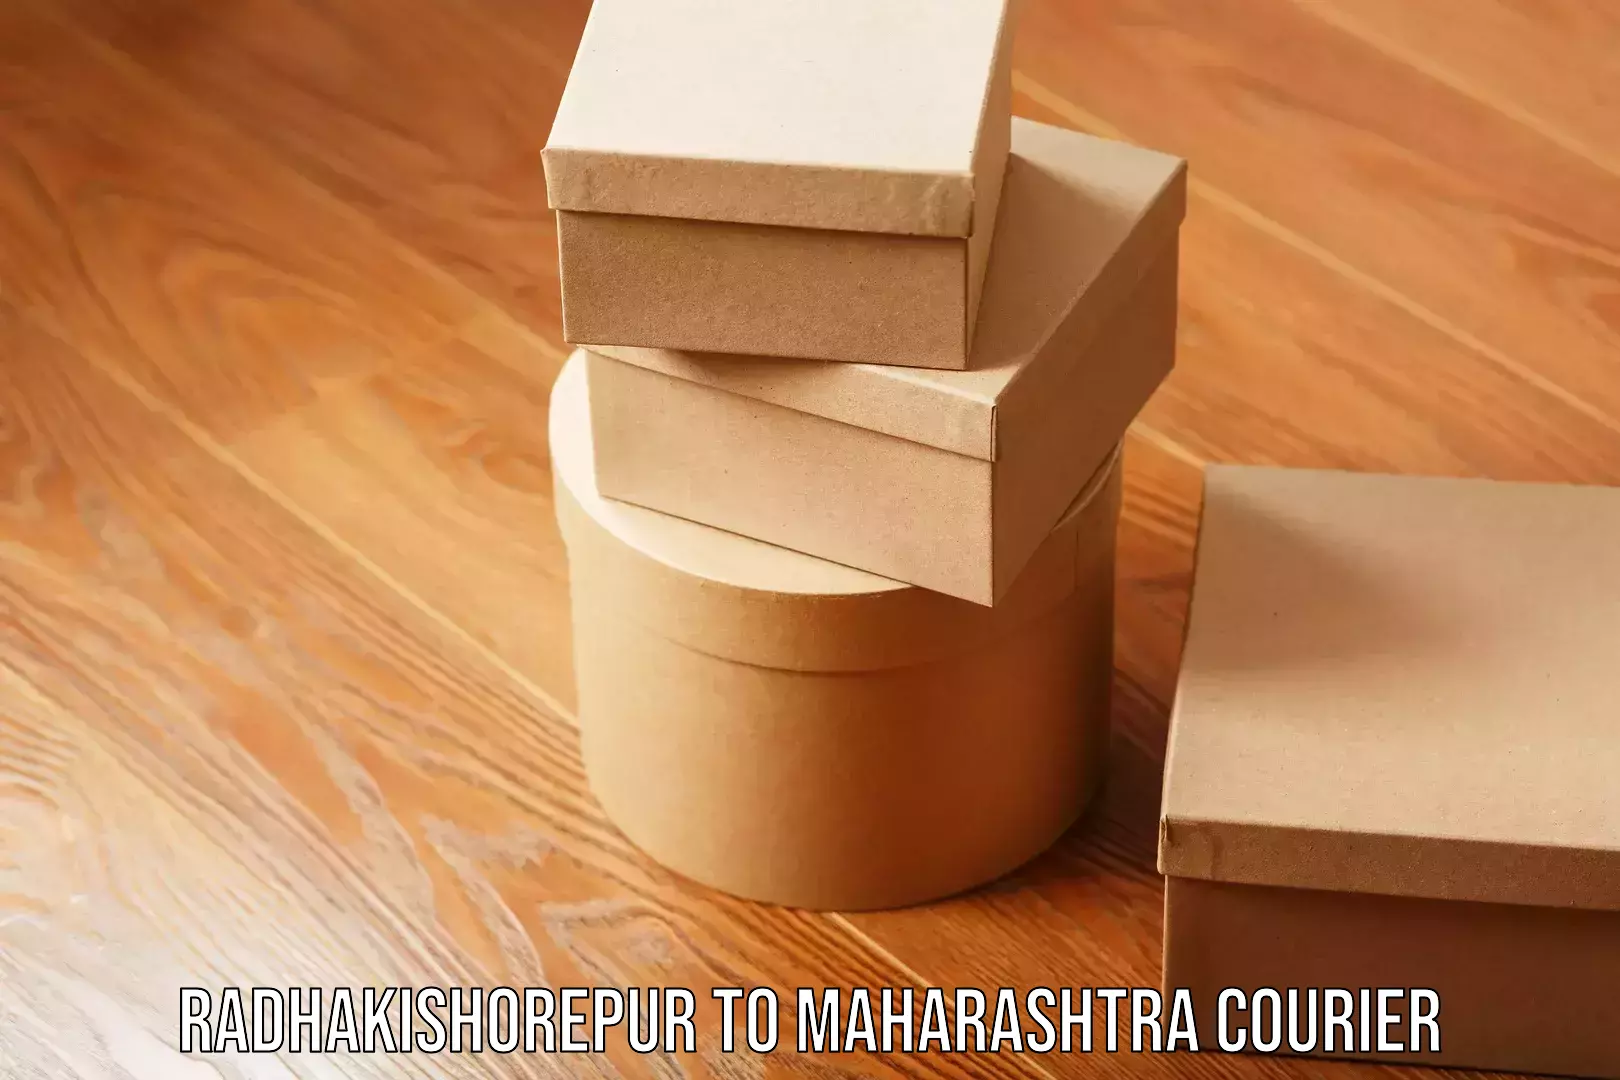 Affordable logistics services Radhakishorepur to Maharashtra